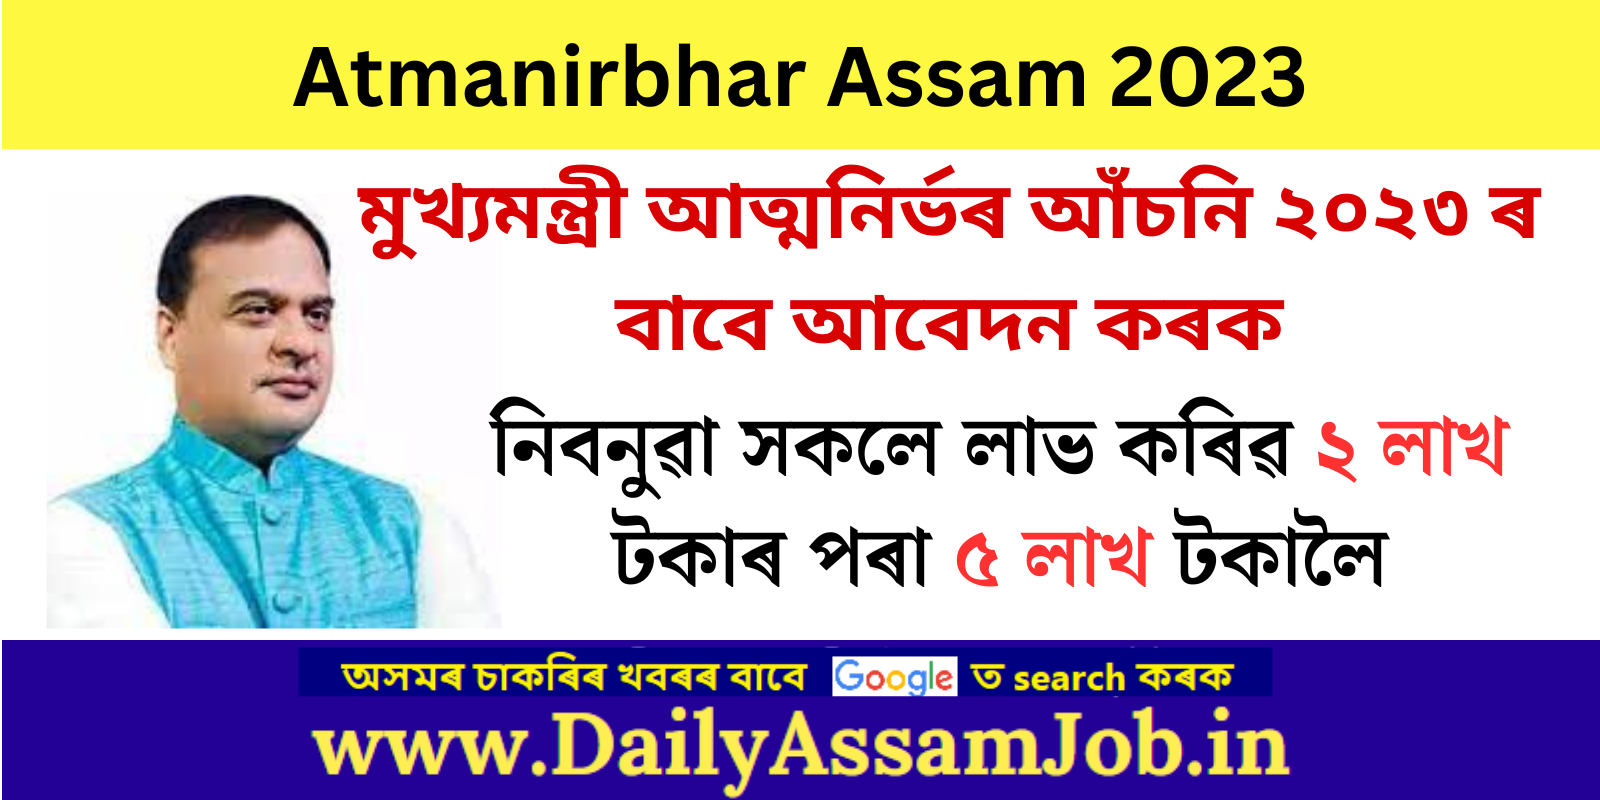 Submit Online Application for Atmanirbhar Assam Scheme